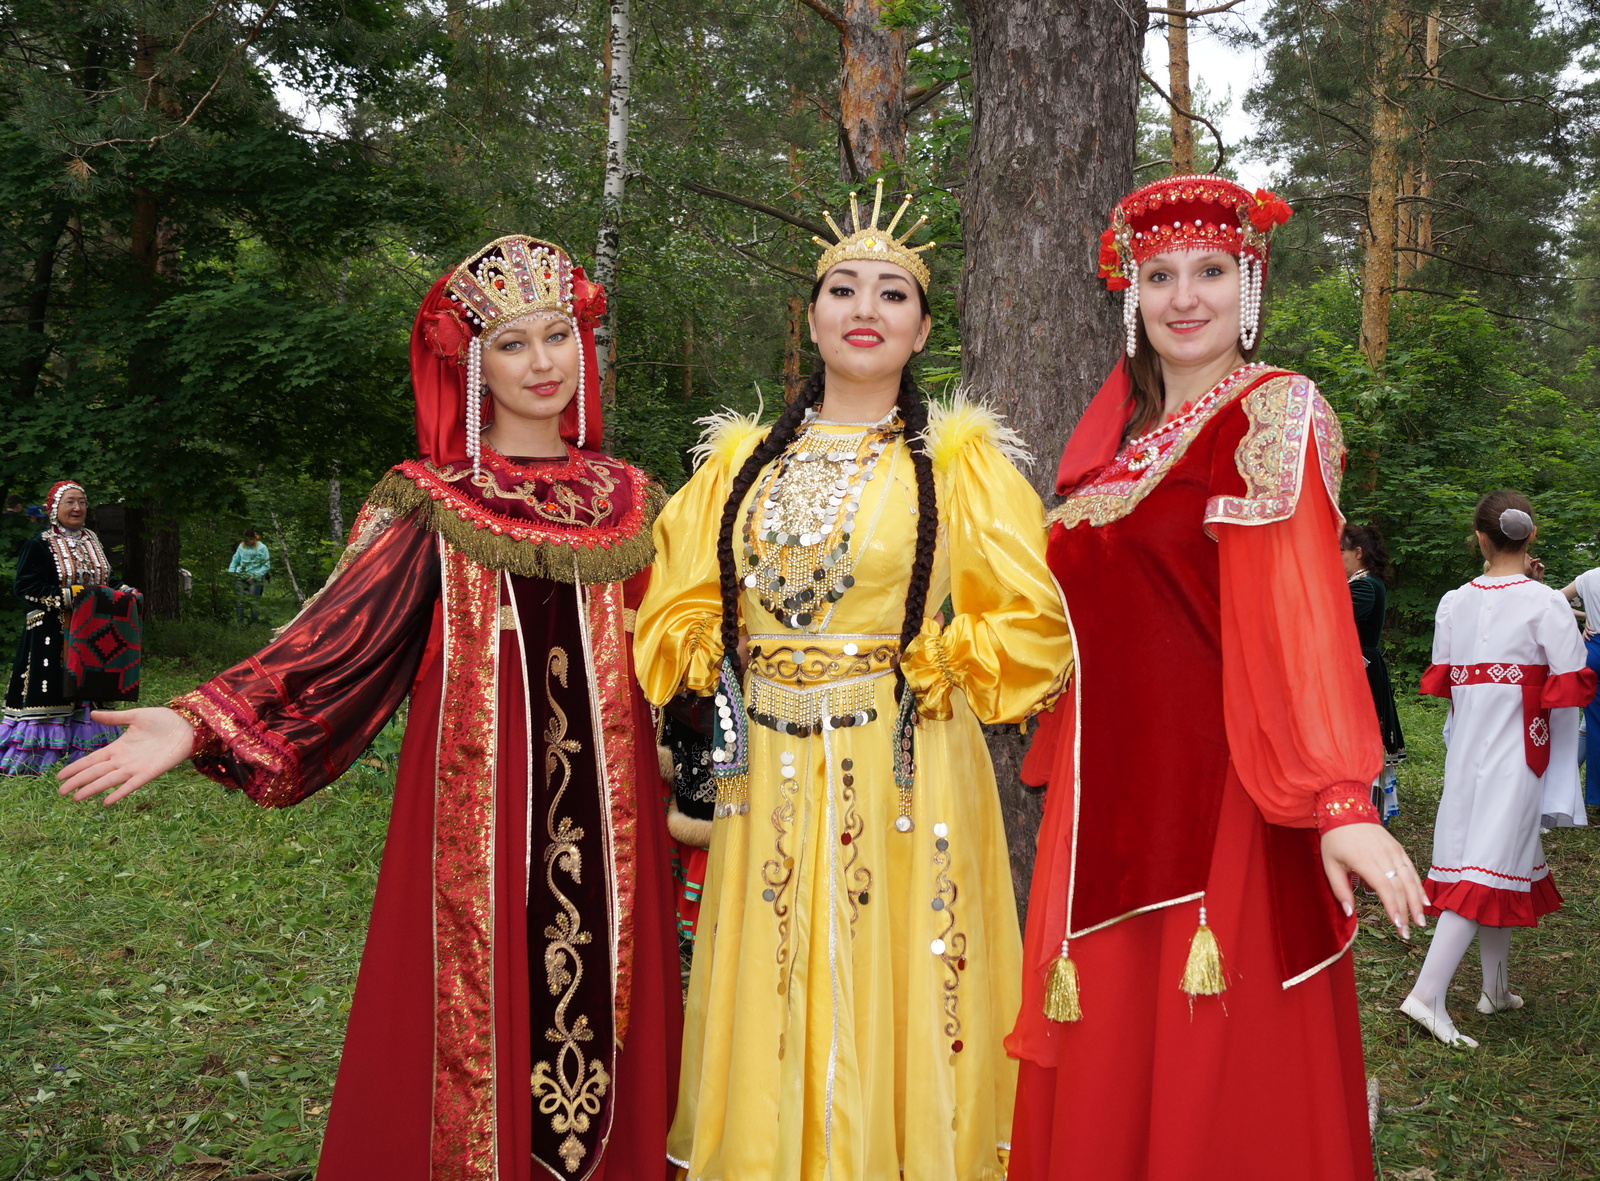 День национального костюма в Куюргазинском районе Башкирии отмечается с особым колоритом, настроением, красочно, интересно